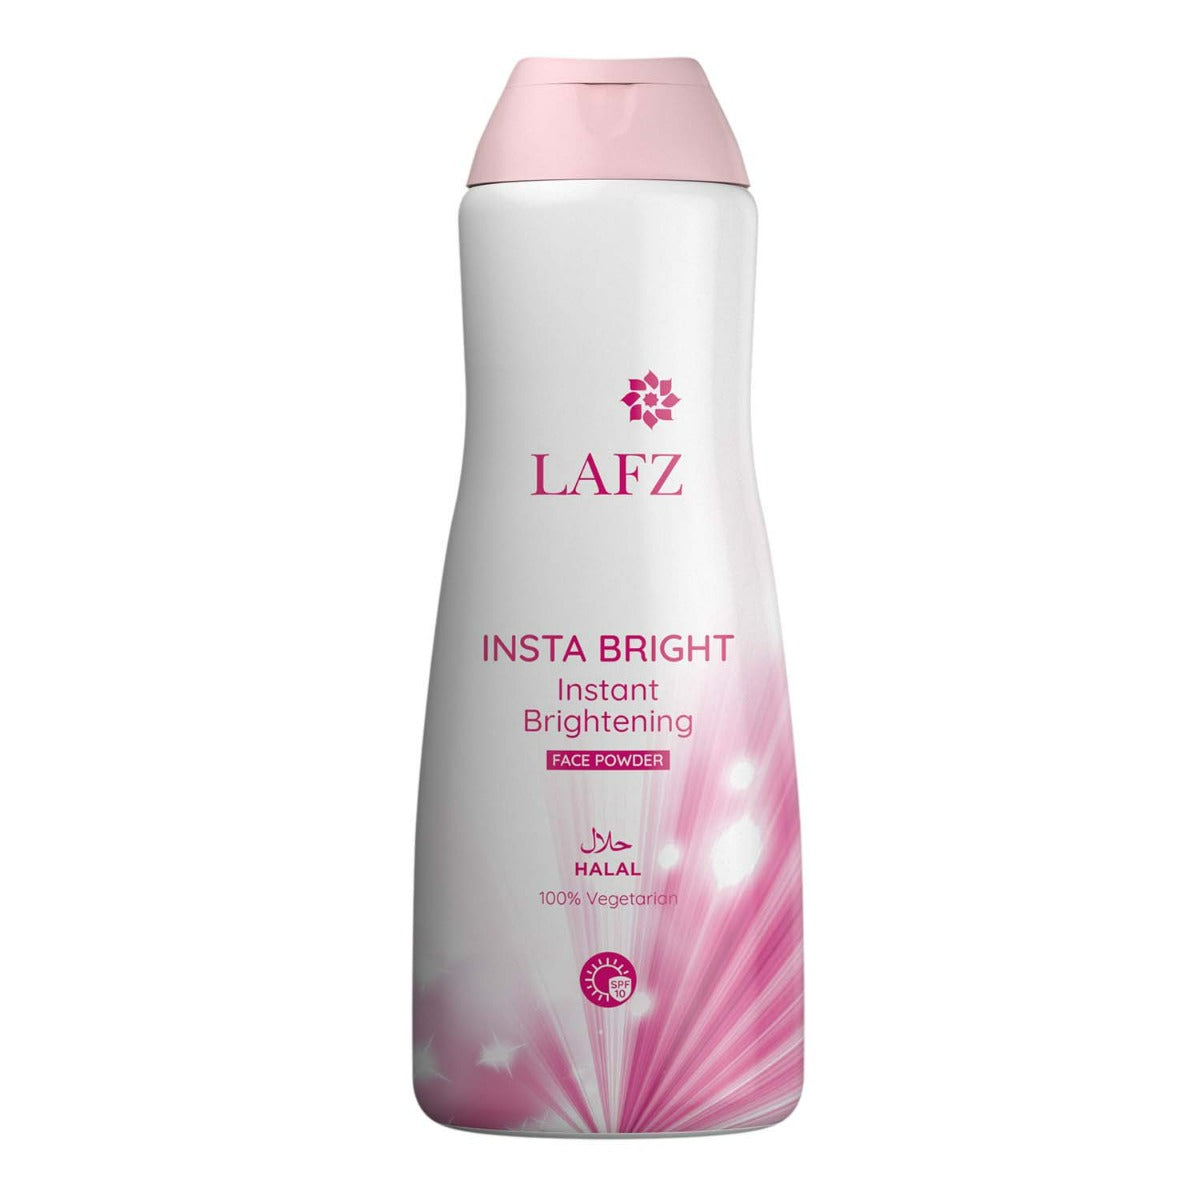 Lafz Insta Bright Instant Brightening Face Powder